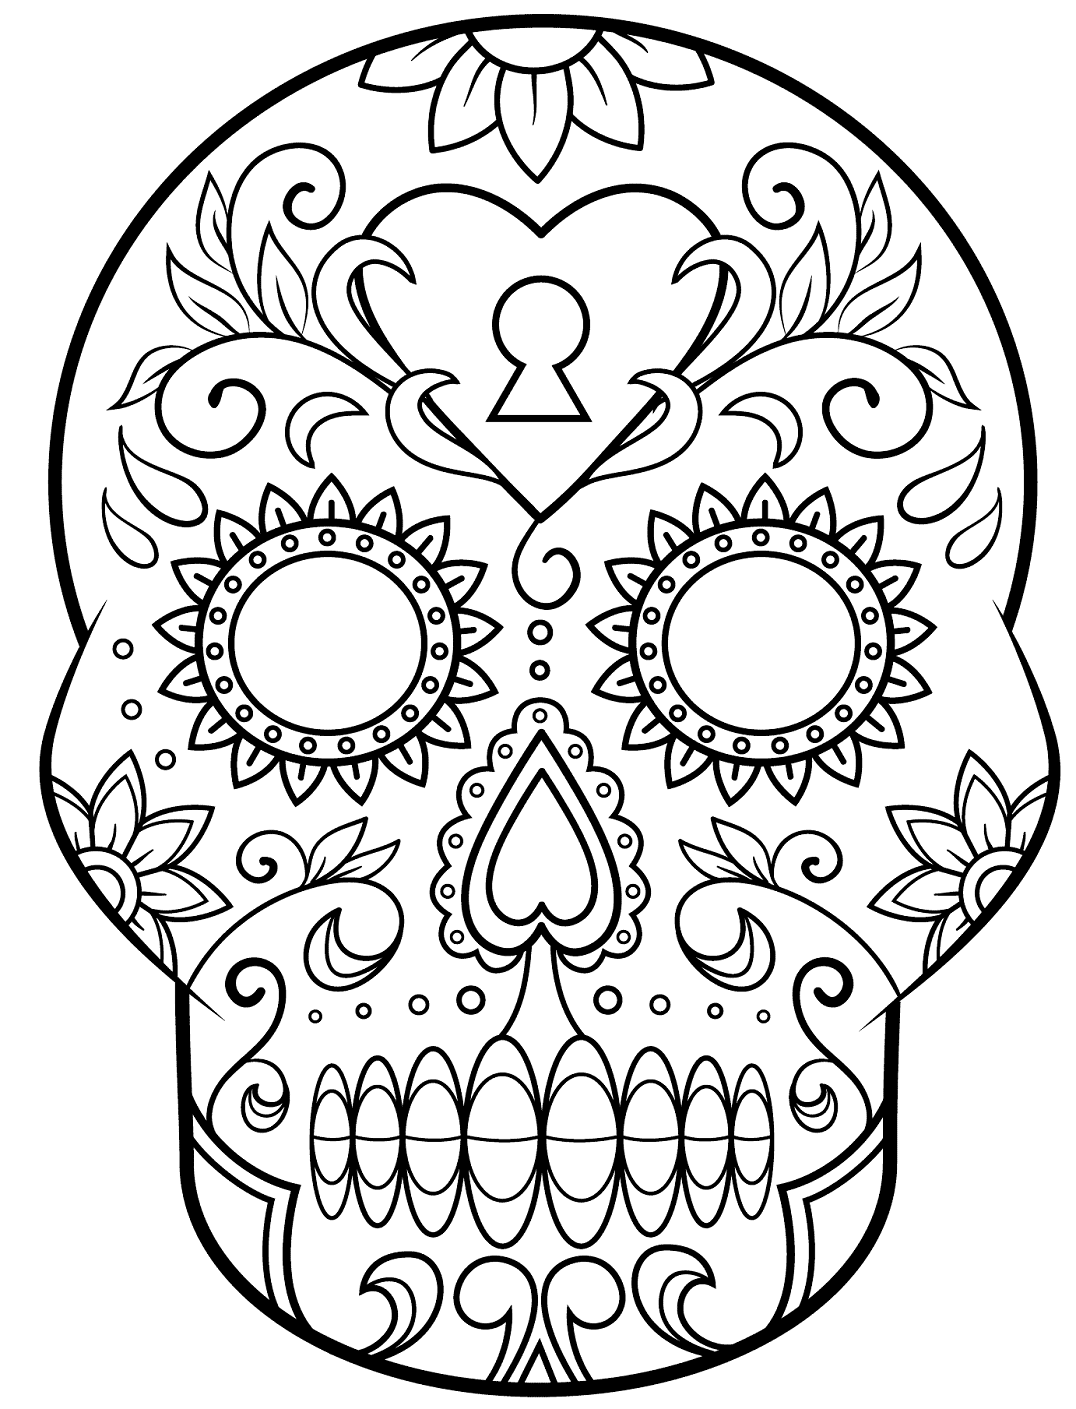 Мексиканский череп